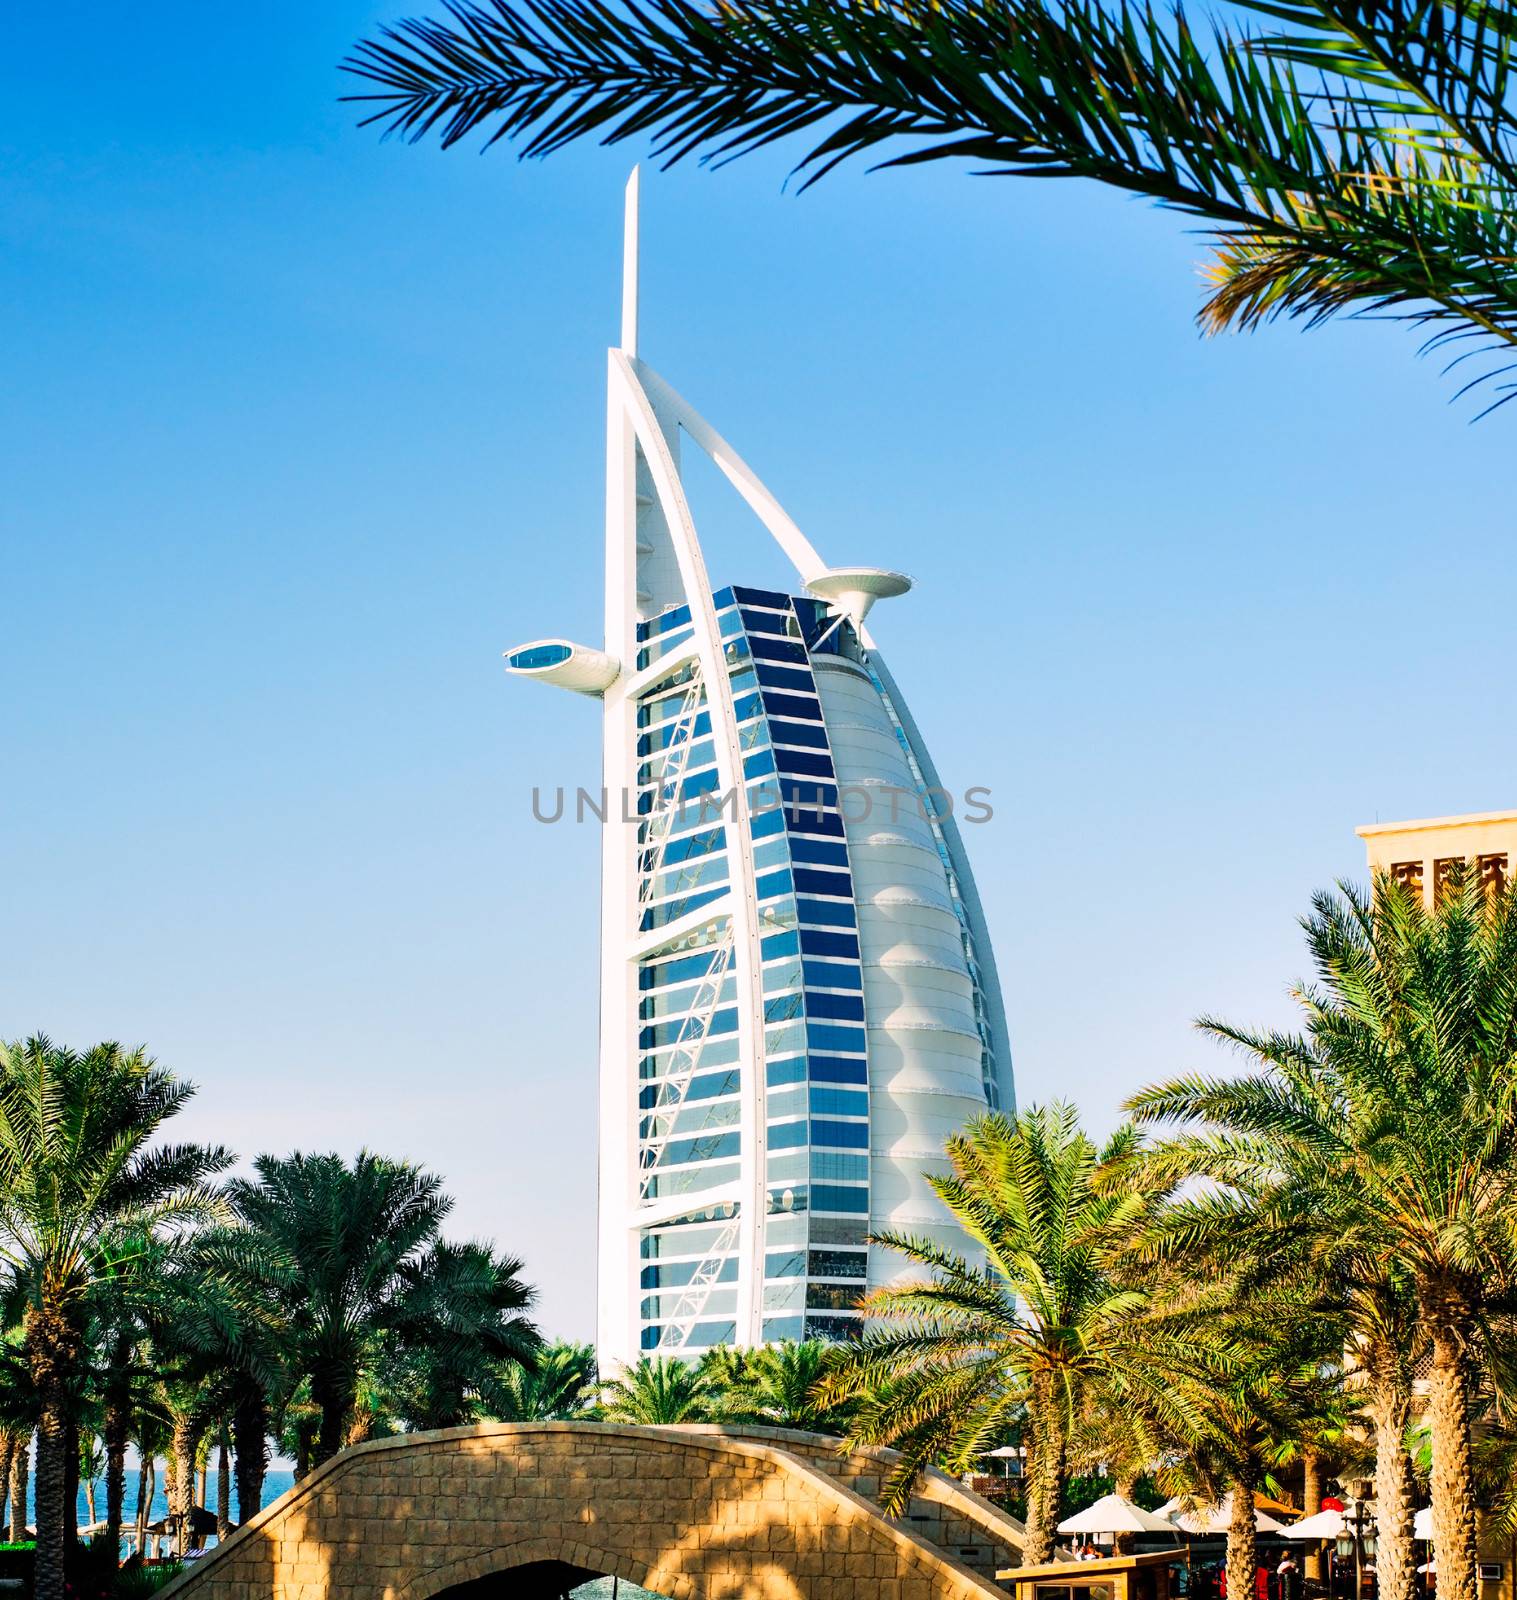 Burj Al Arab by GekaSkr